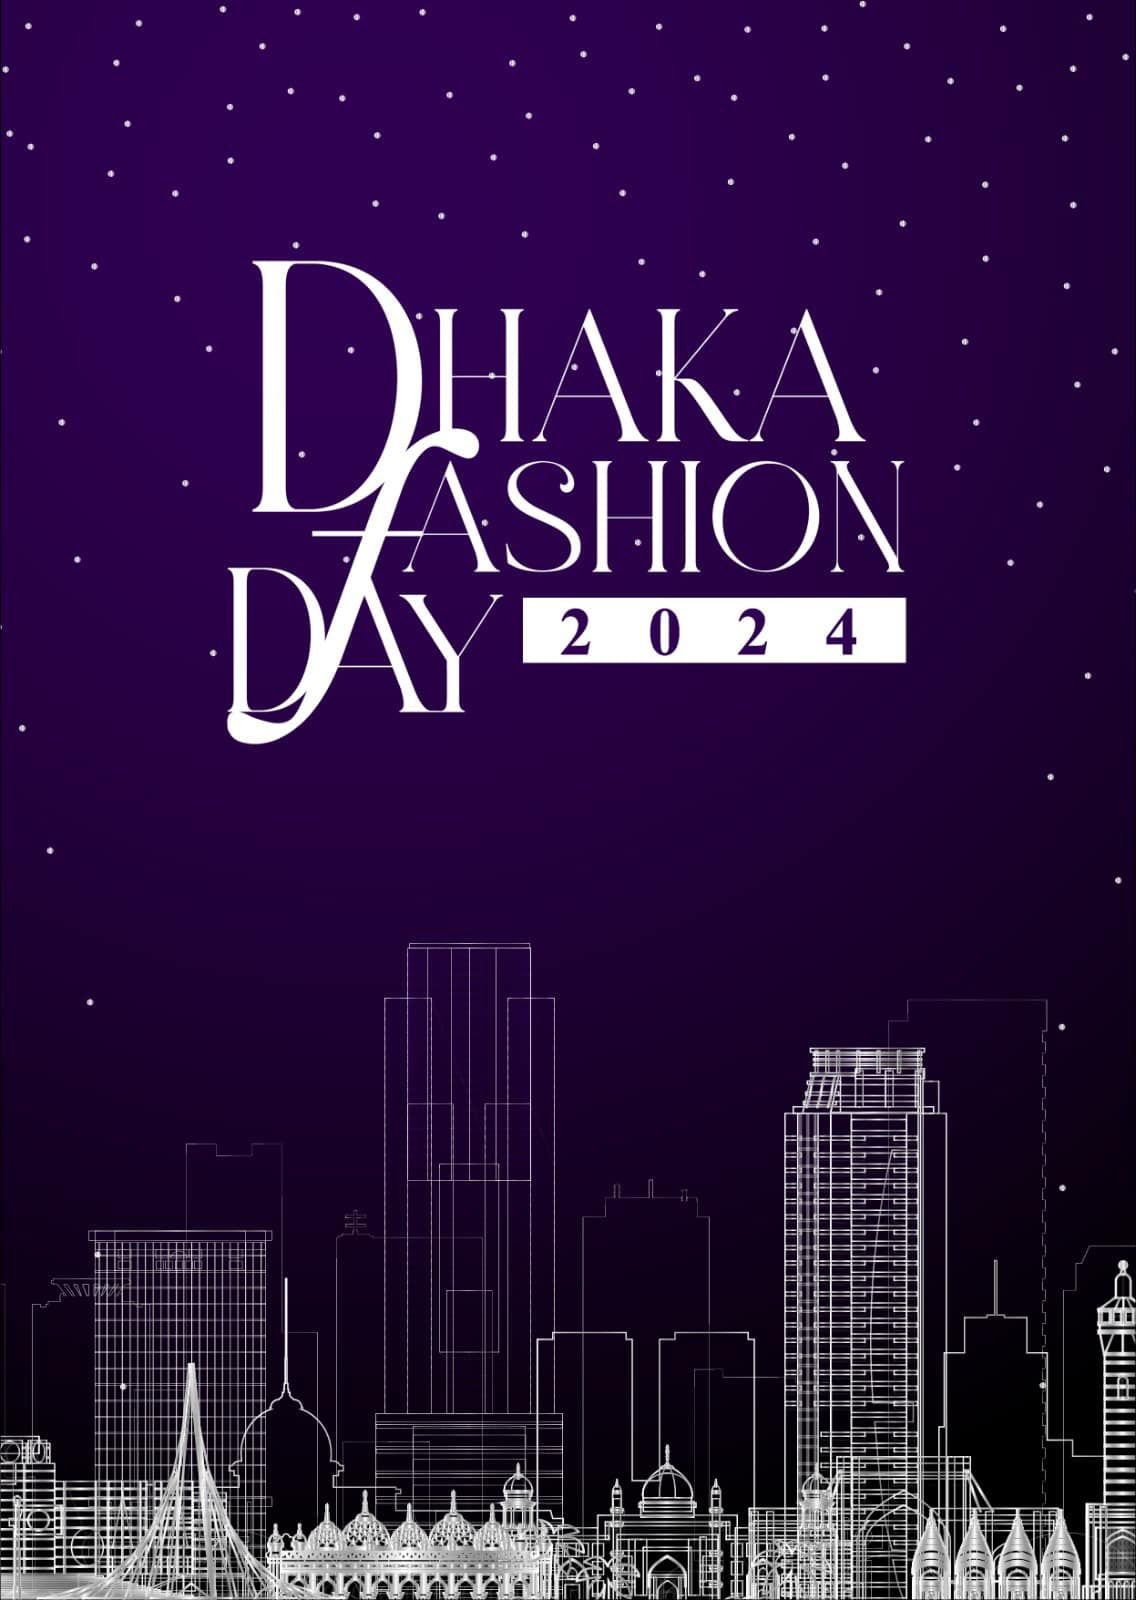 Dhaka fashion day 